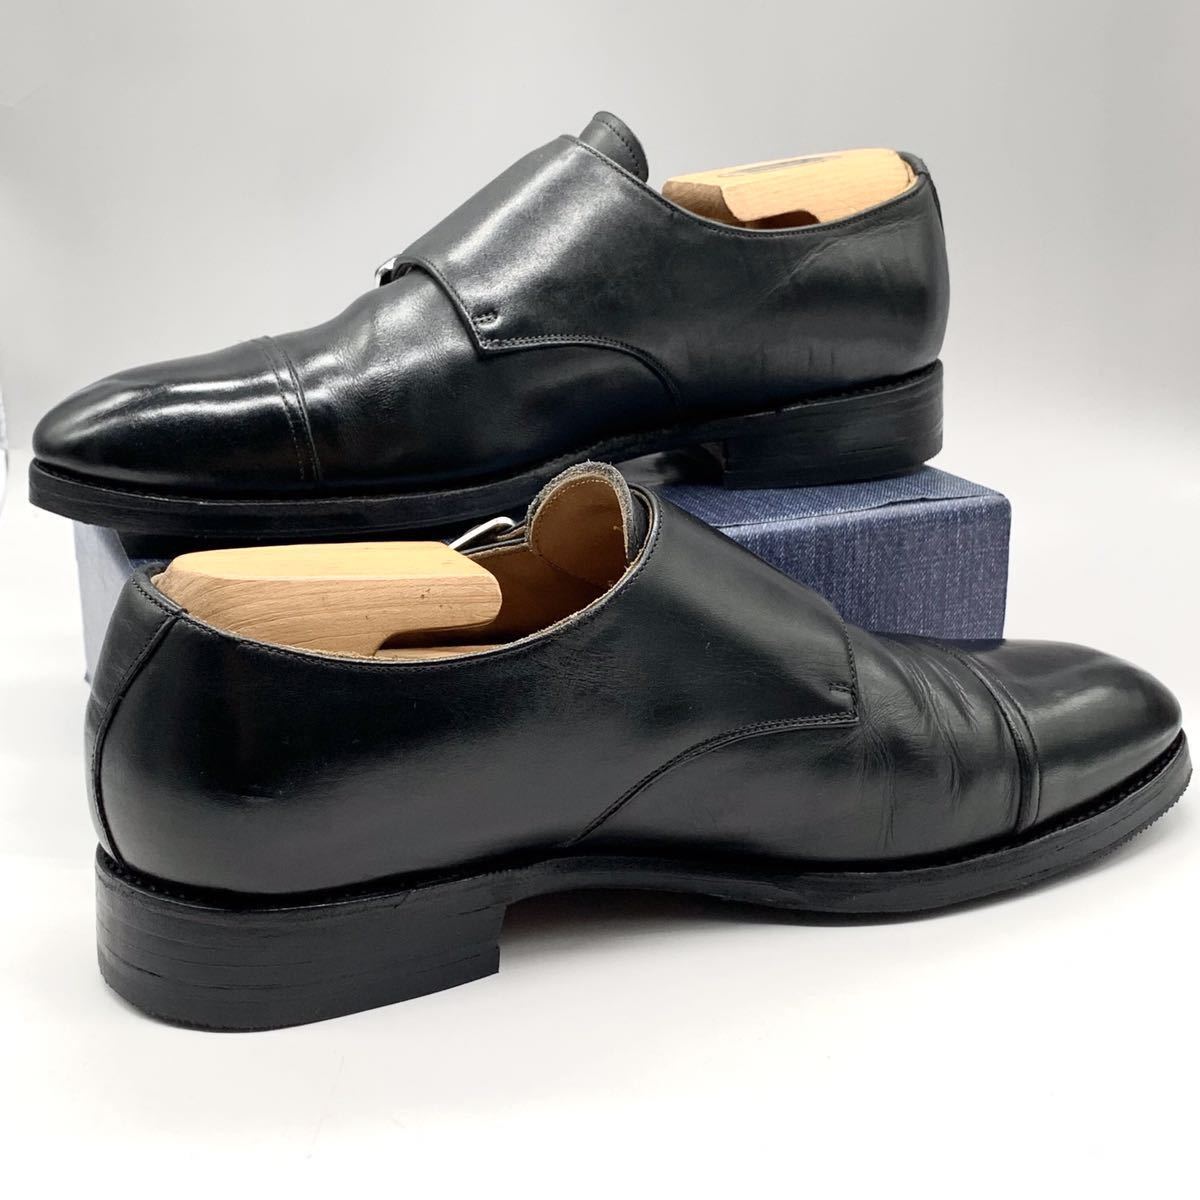 MEERMIN (メルミン) ドレスシューズ ダブルモンク ストラップ ストレートチップ レザー ブラック 黒 UK6.5 25cm 革靴 メンズ